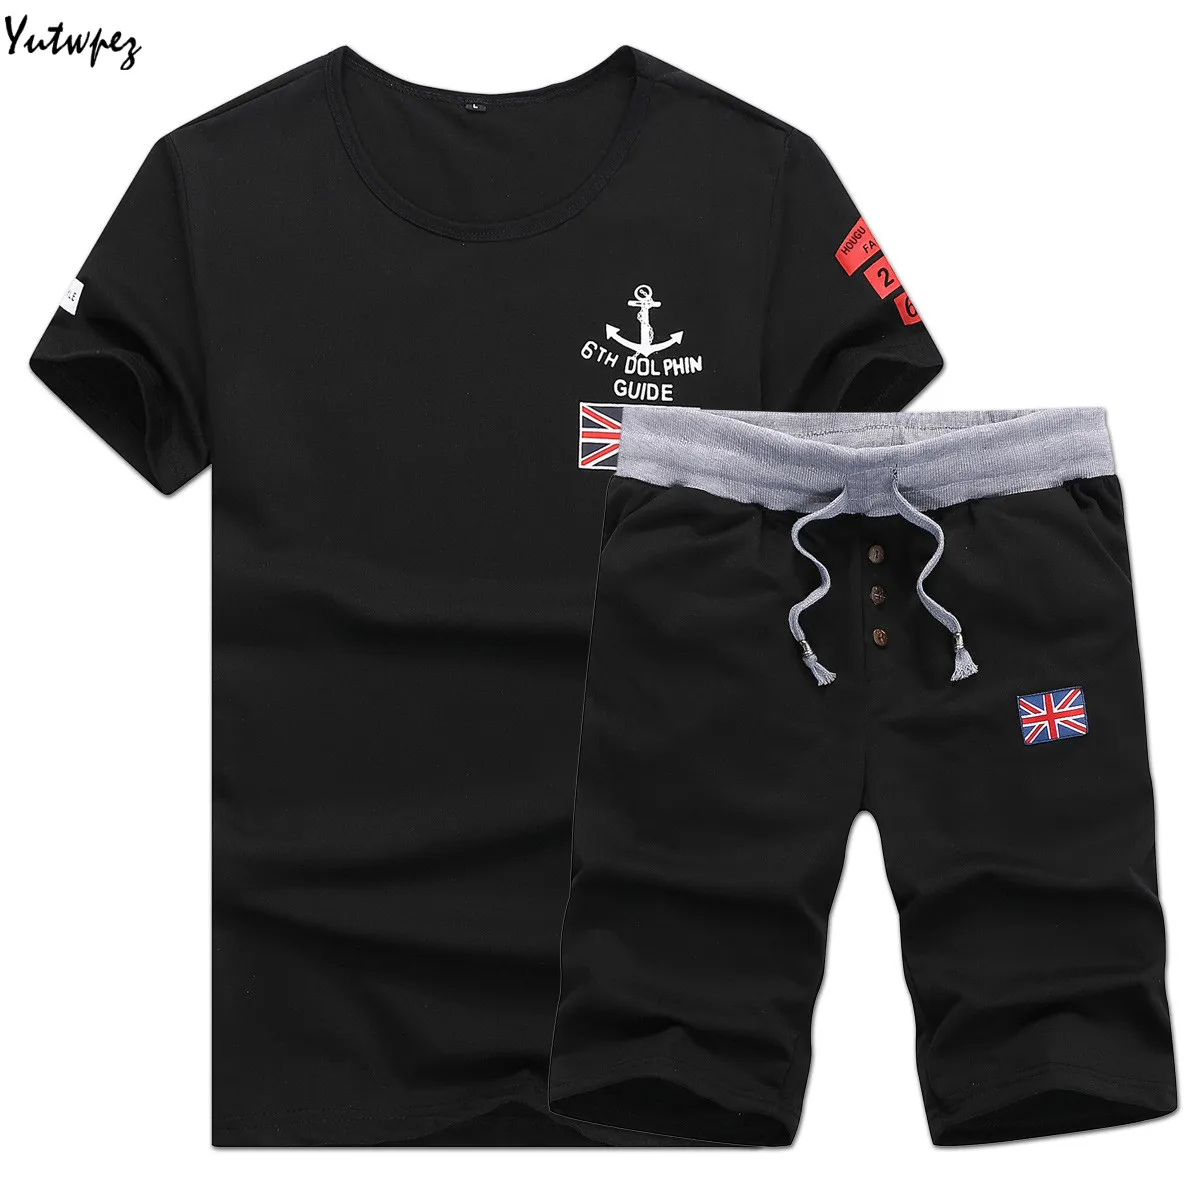 Yutwpez лето для мужчин комплект футболки с коротким рукавом из двух предметов Топы Корректирующие+ шорты для женщин Костюм спортивный